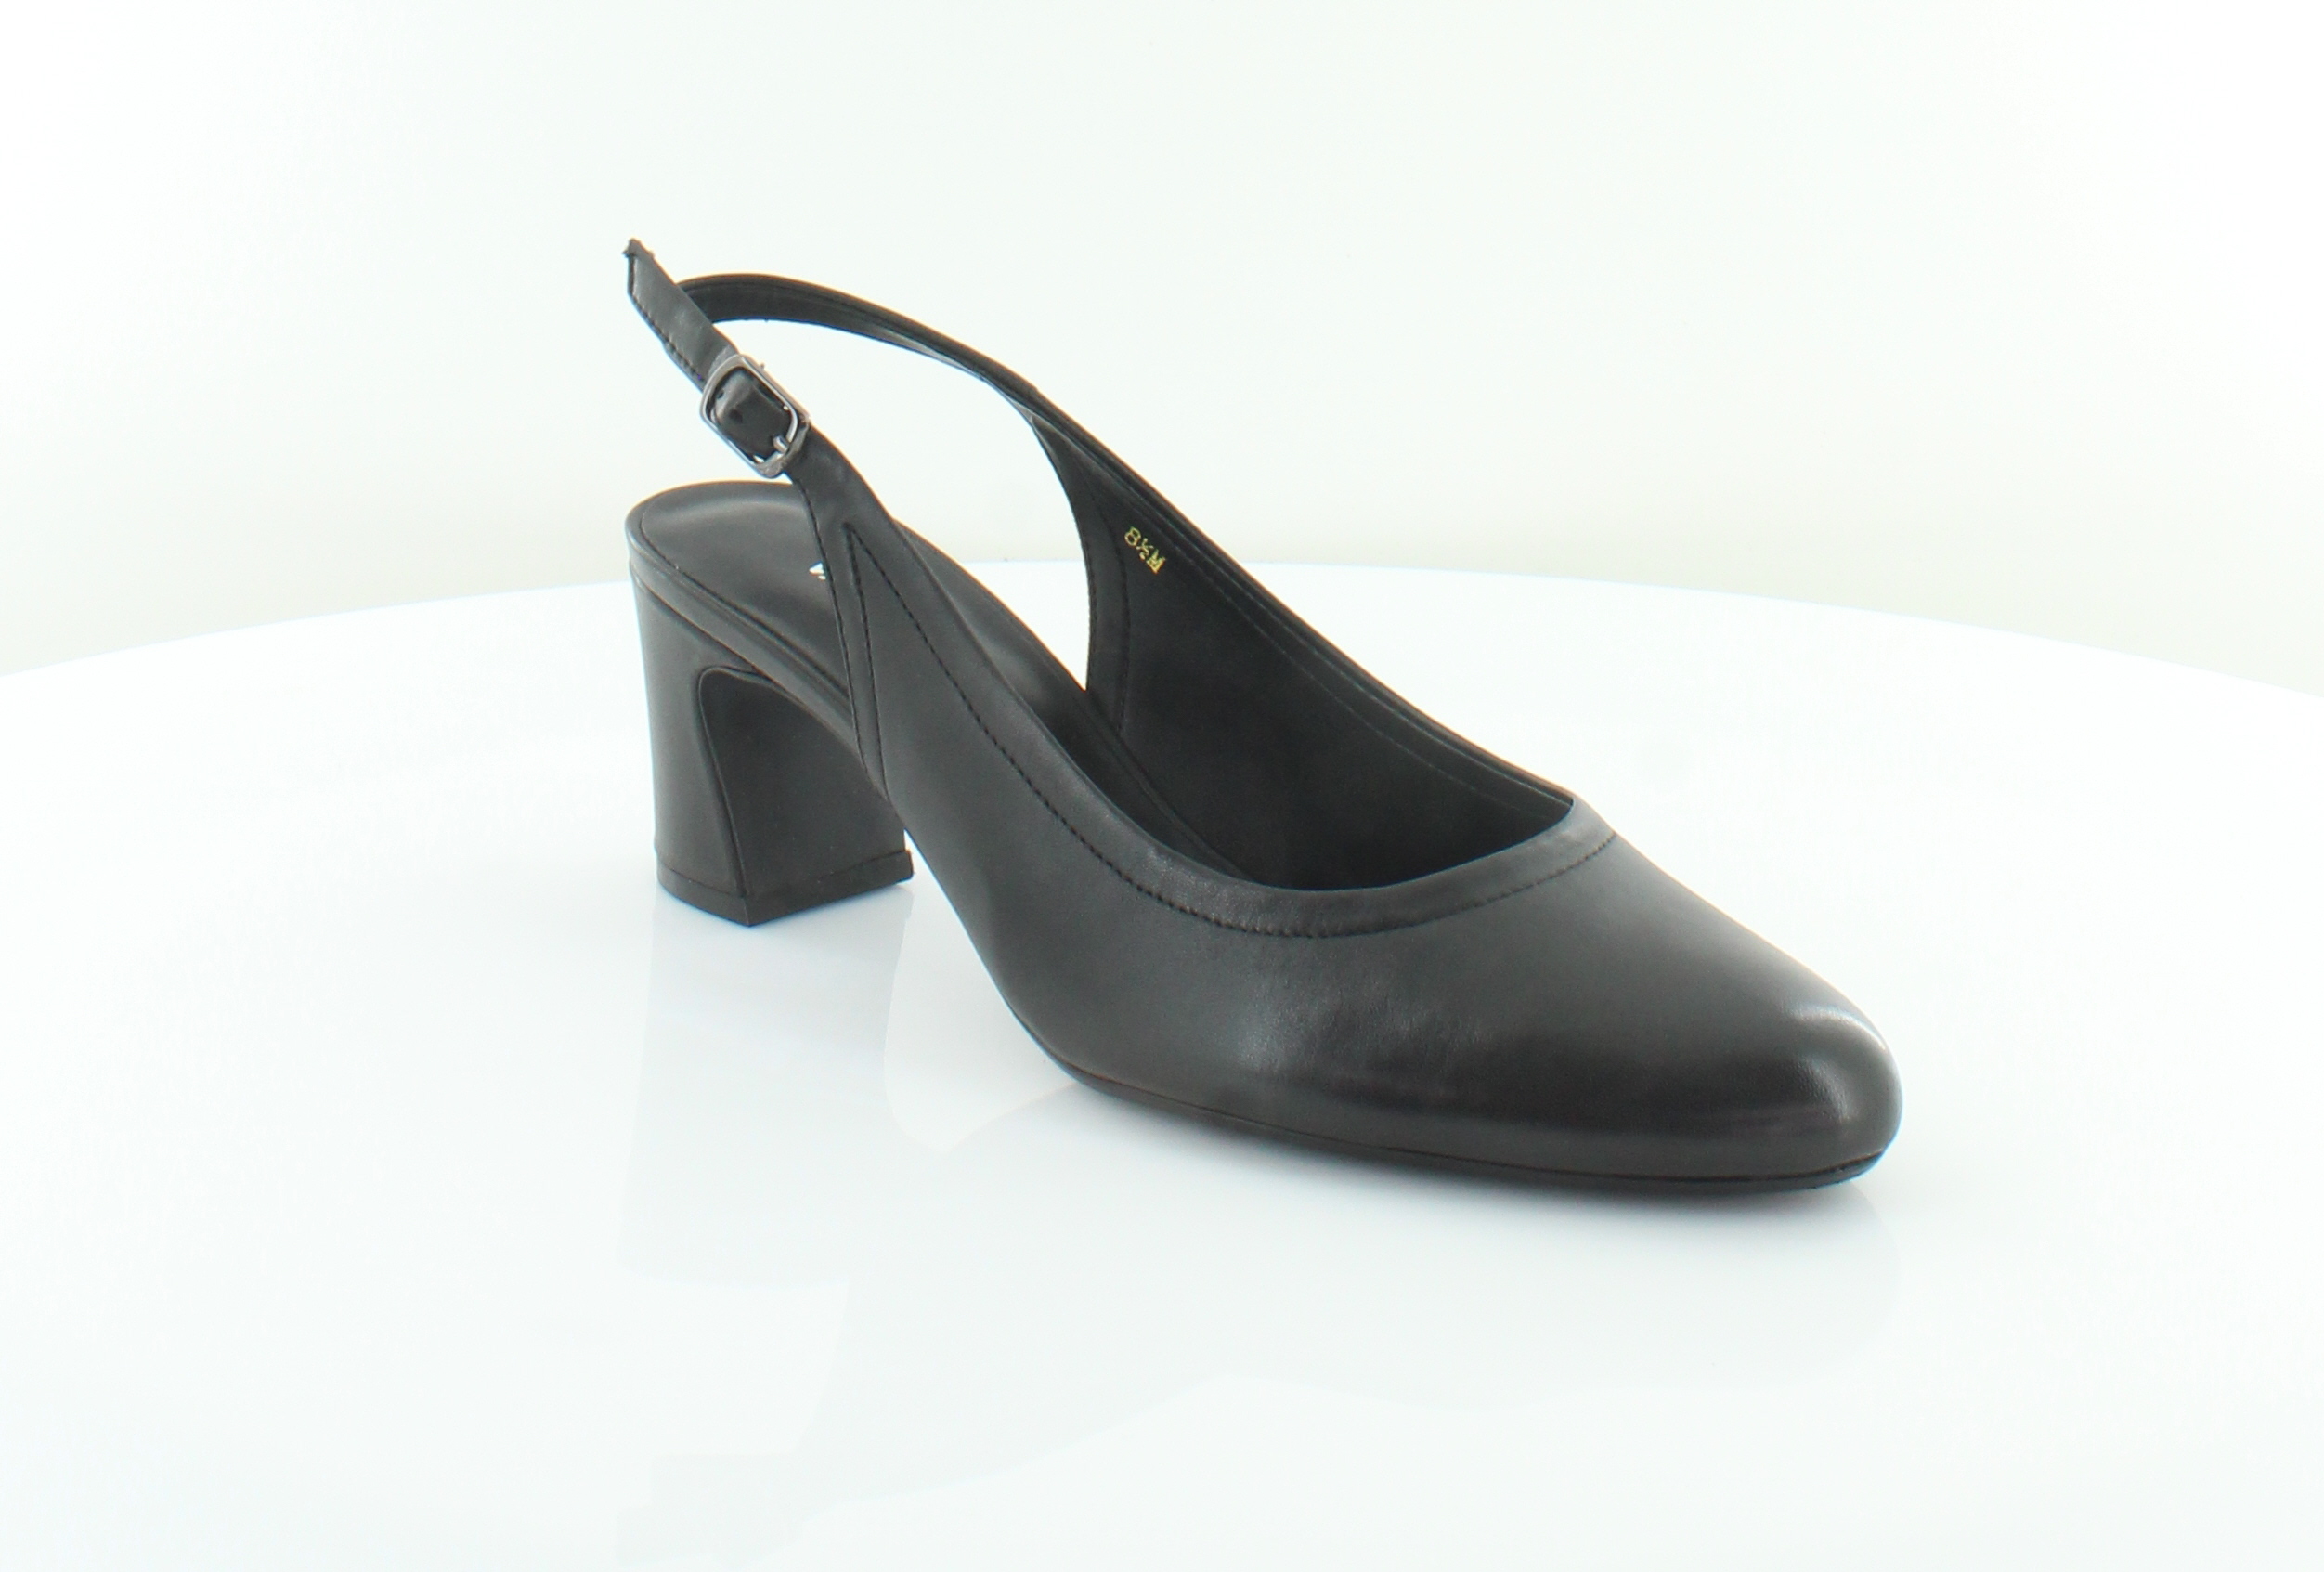 Vaneli Darby Women's Heels Black | eBay